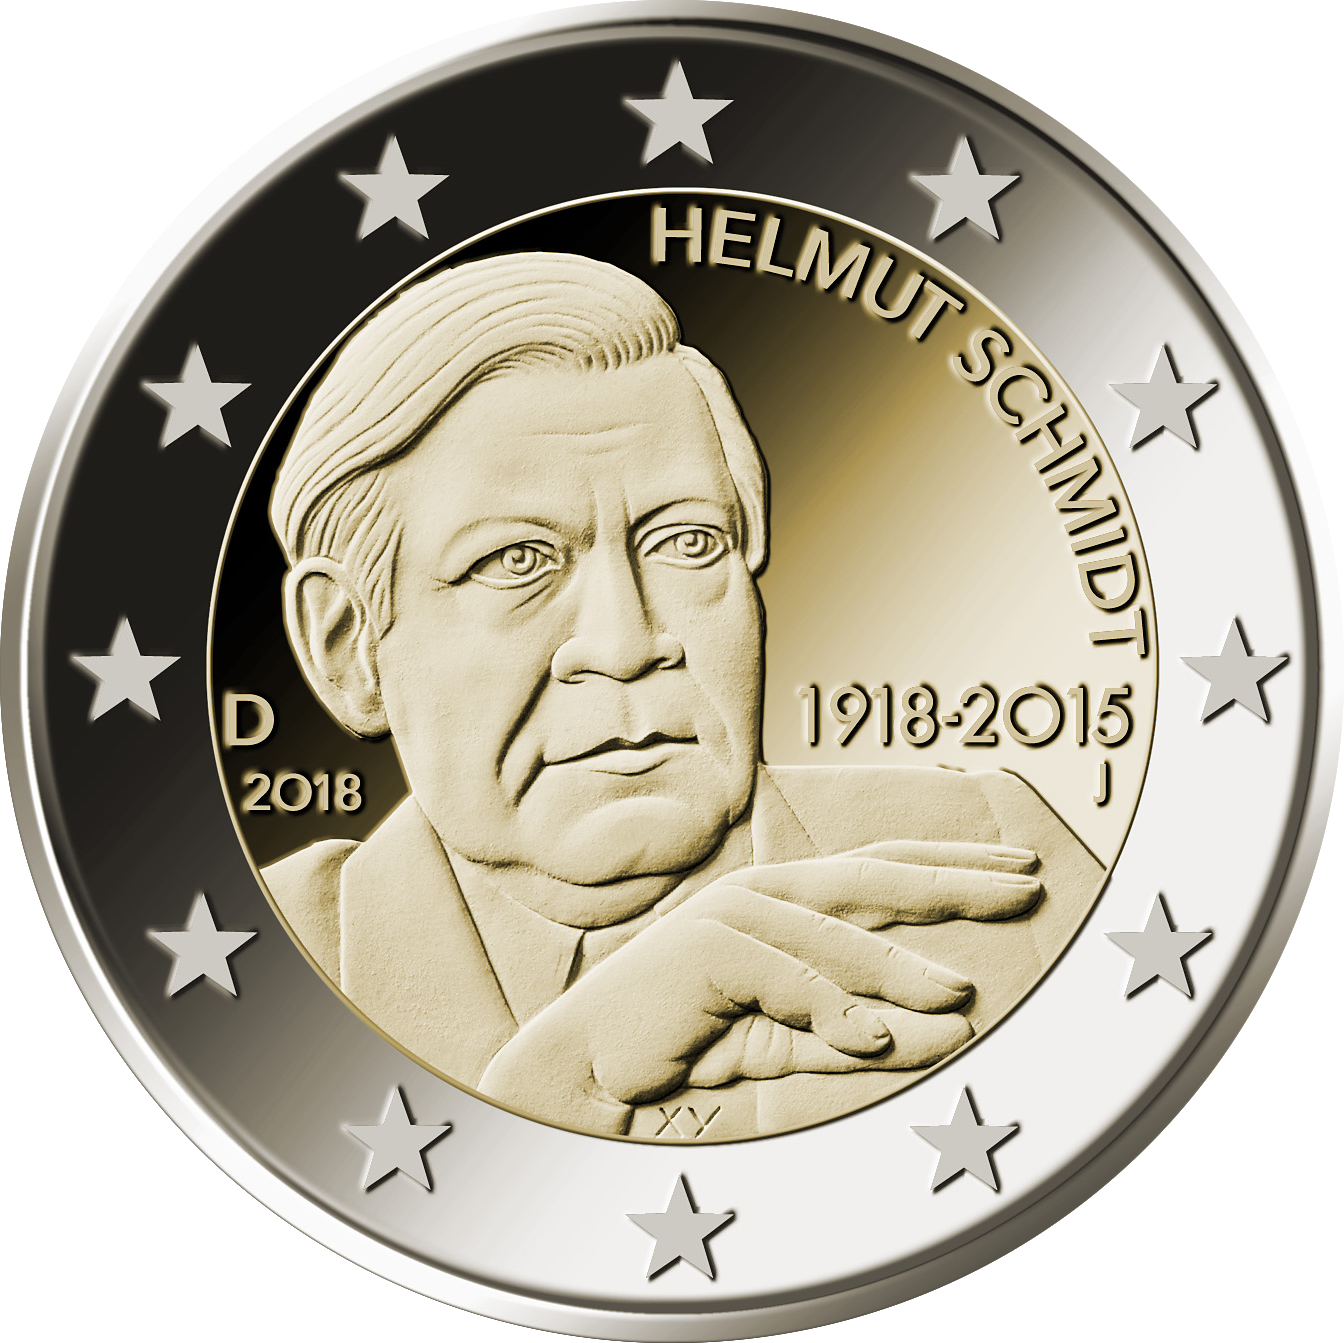 2-Euro-Münze mit Helmut Schmidt